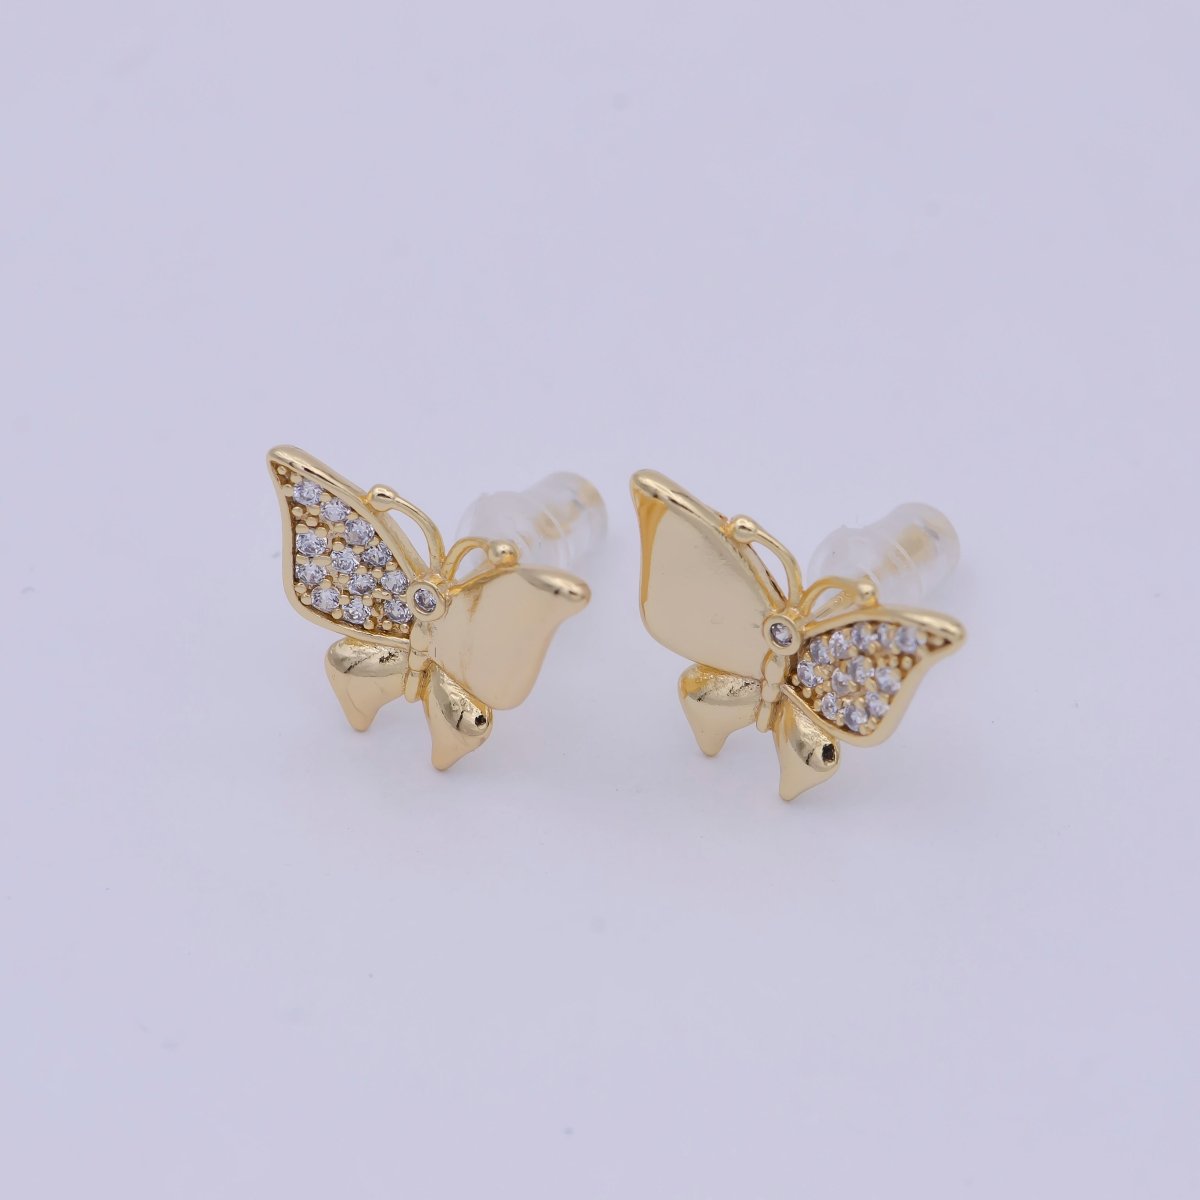 Mini Gold Butterfly Stud Earring T-356 - DLUXCA